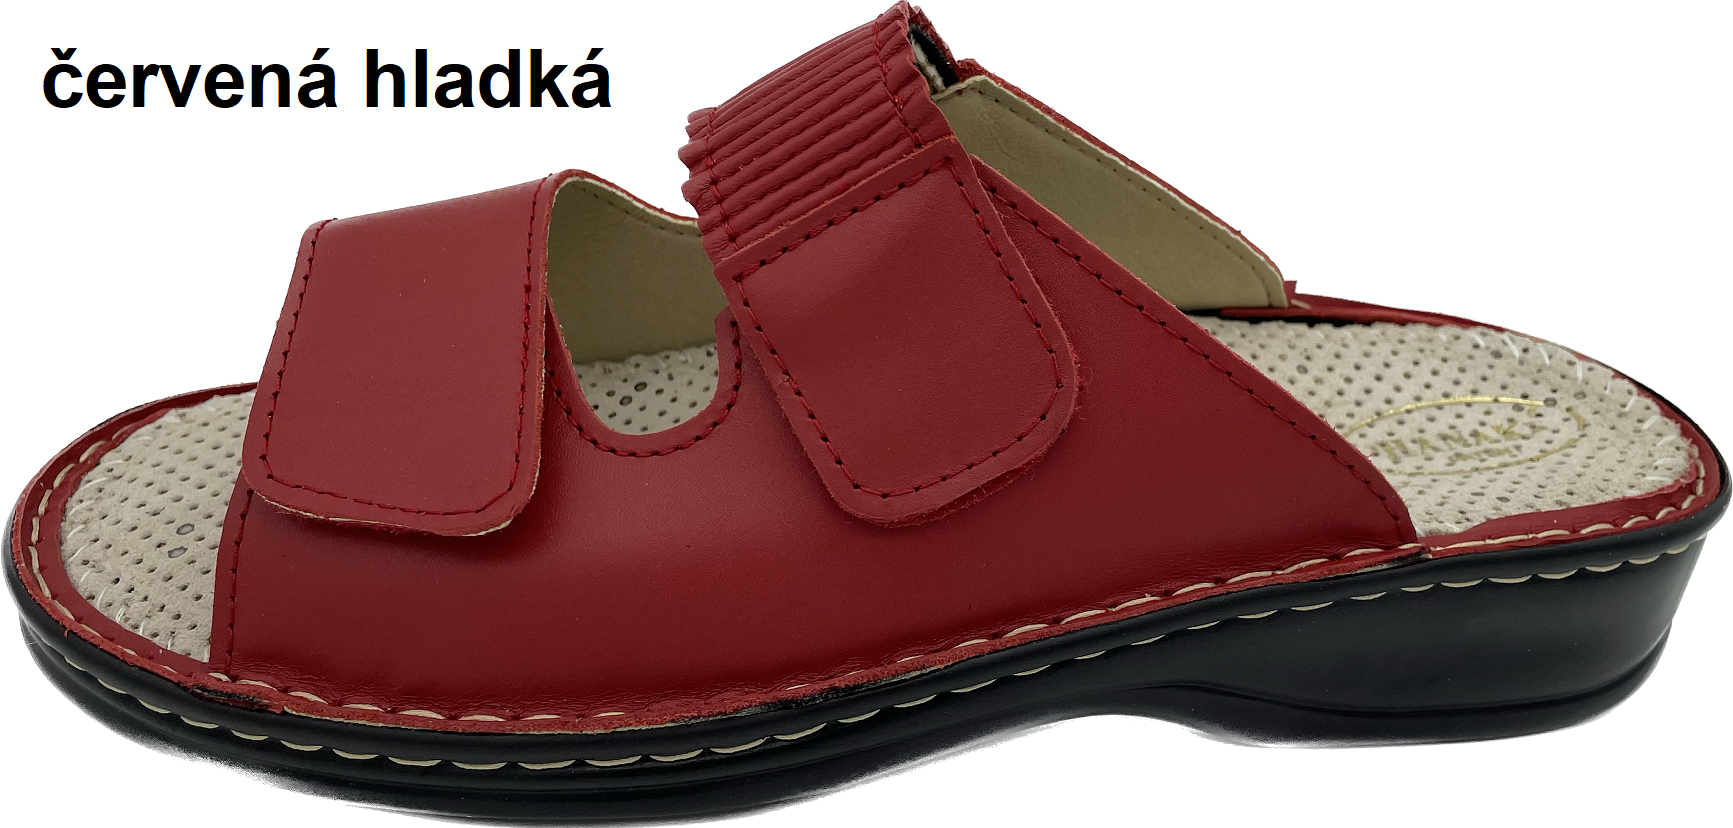 Boty Hanák vzor 304 - černá podešev Barva usně: červená hladká, Velikosti obuvi: 40